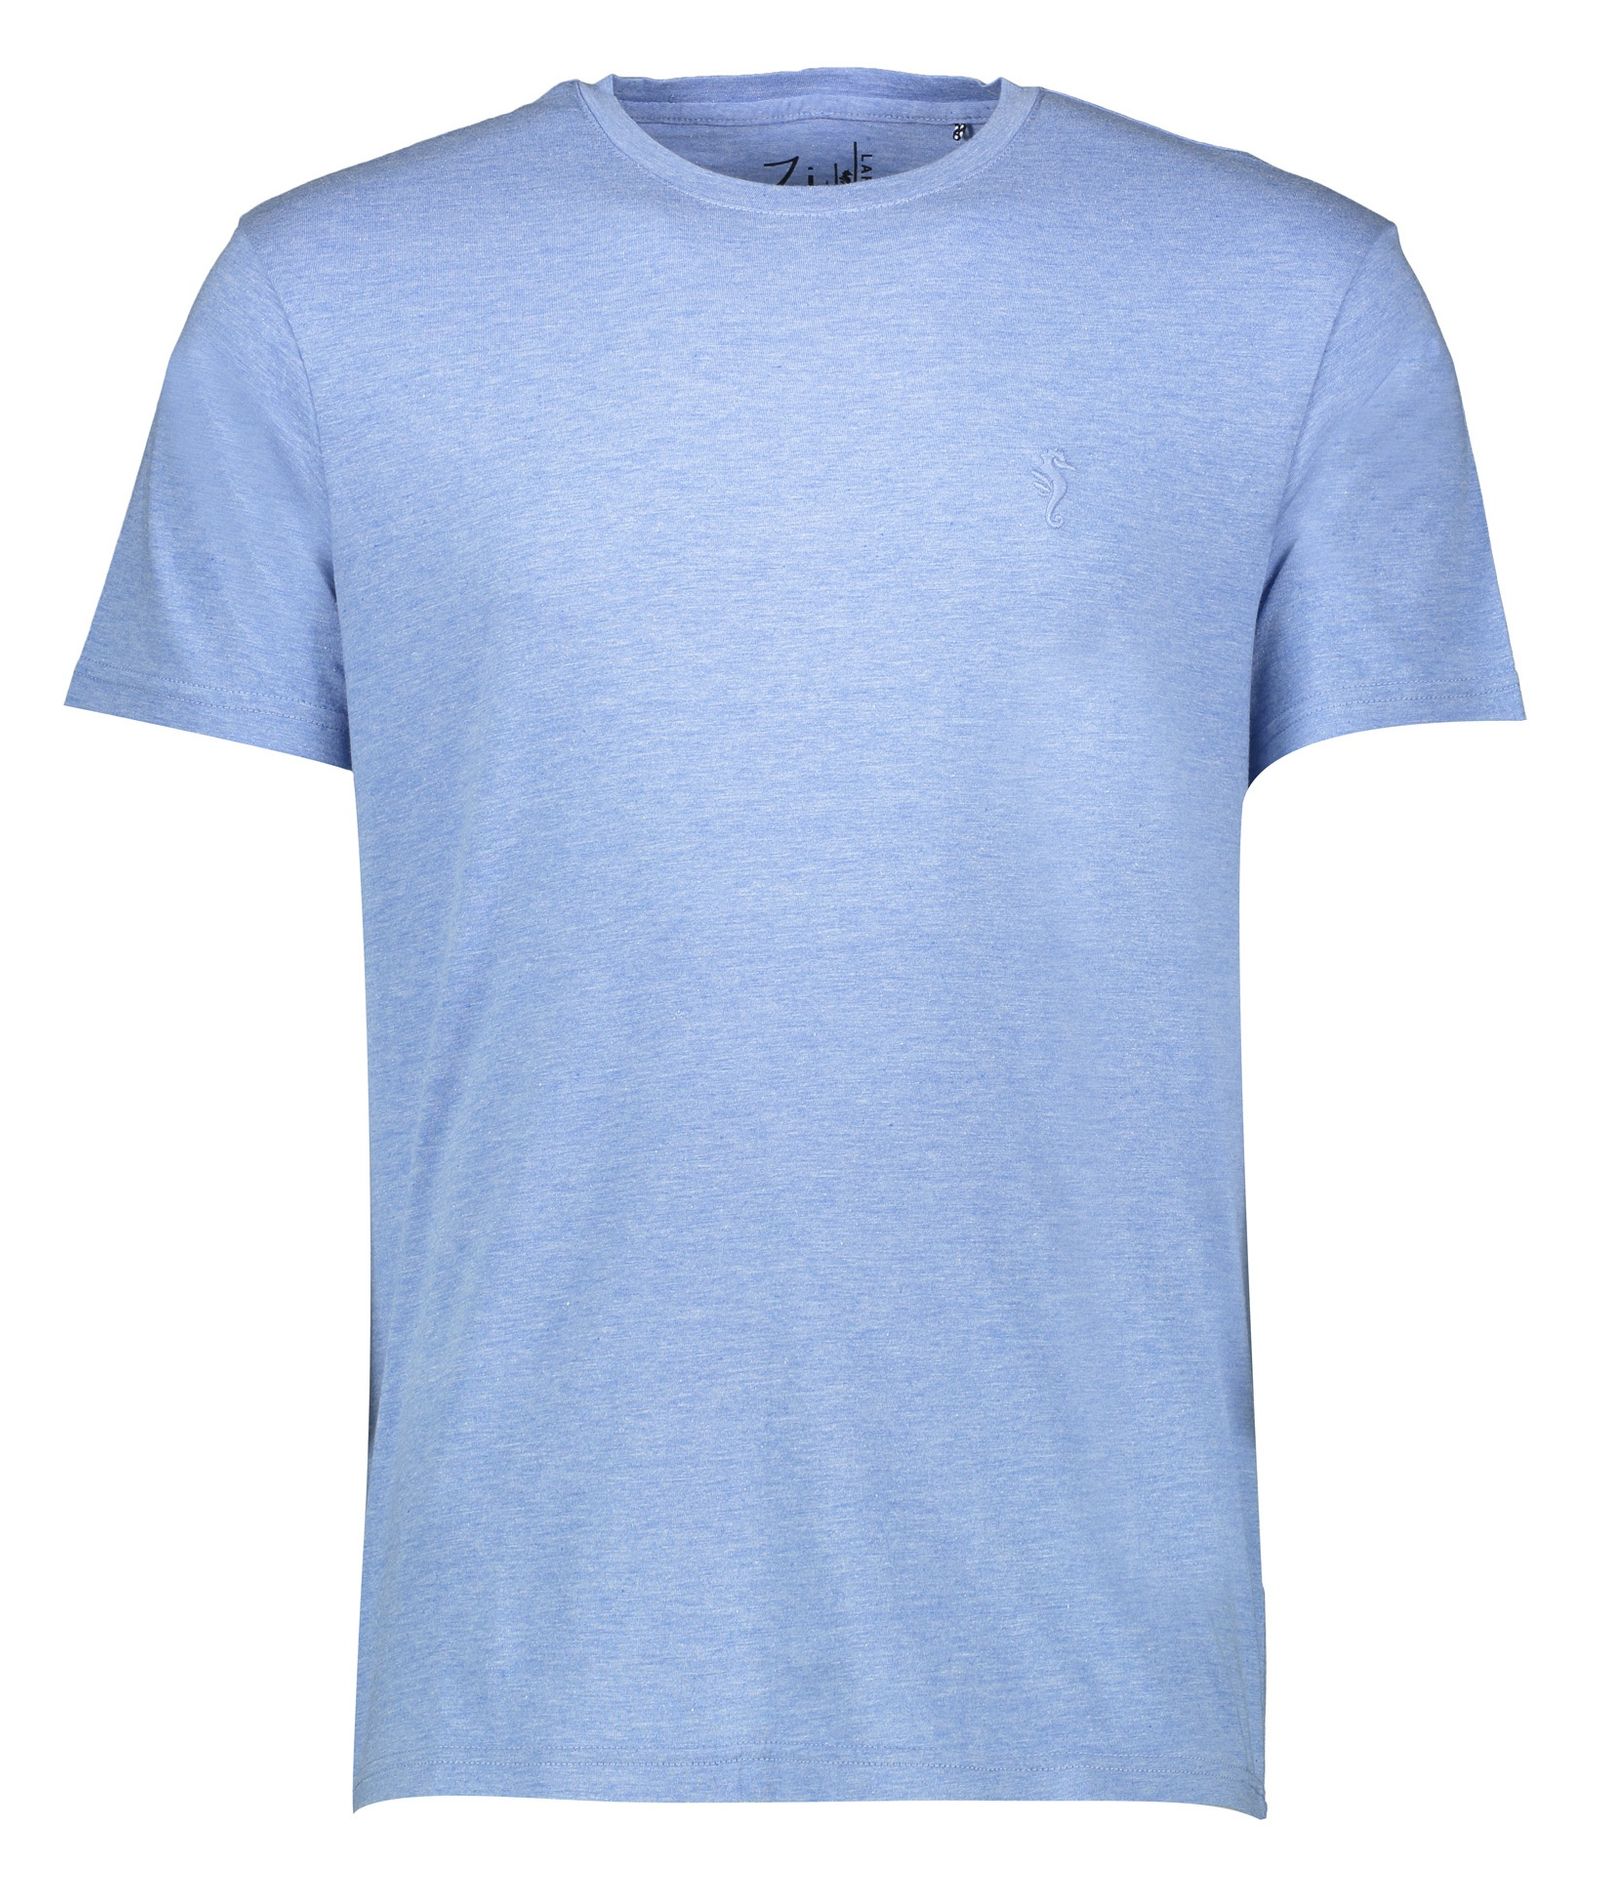 تی شرت مردانه زی سا مدل 153113158 -  - 2